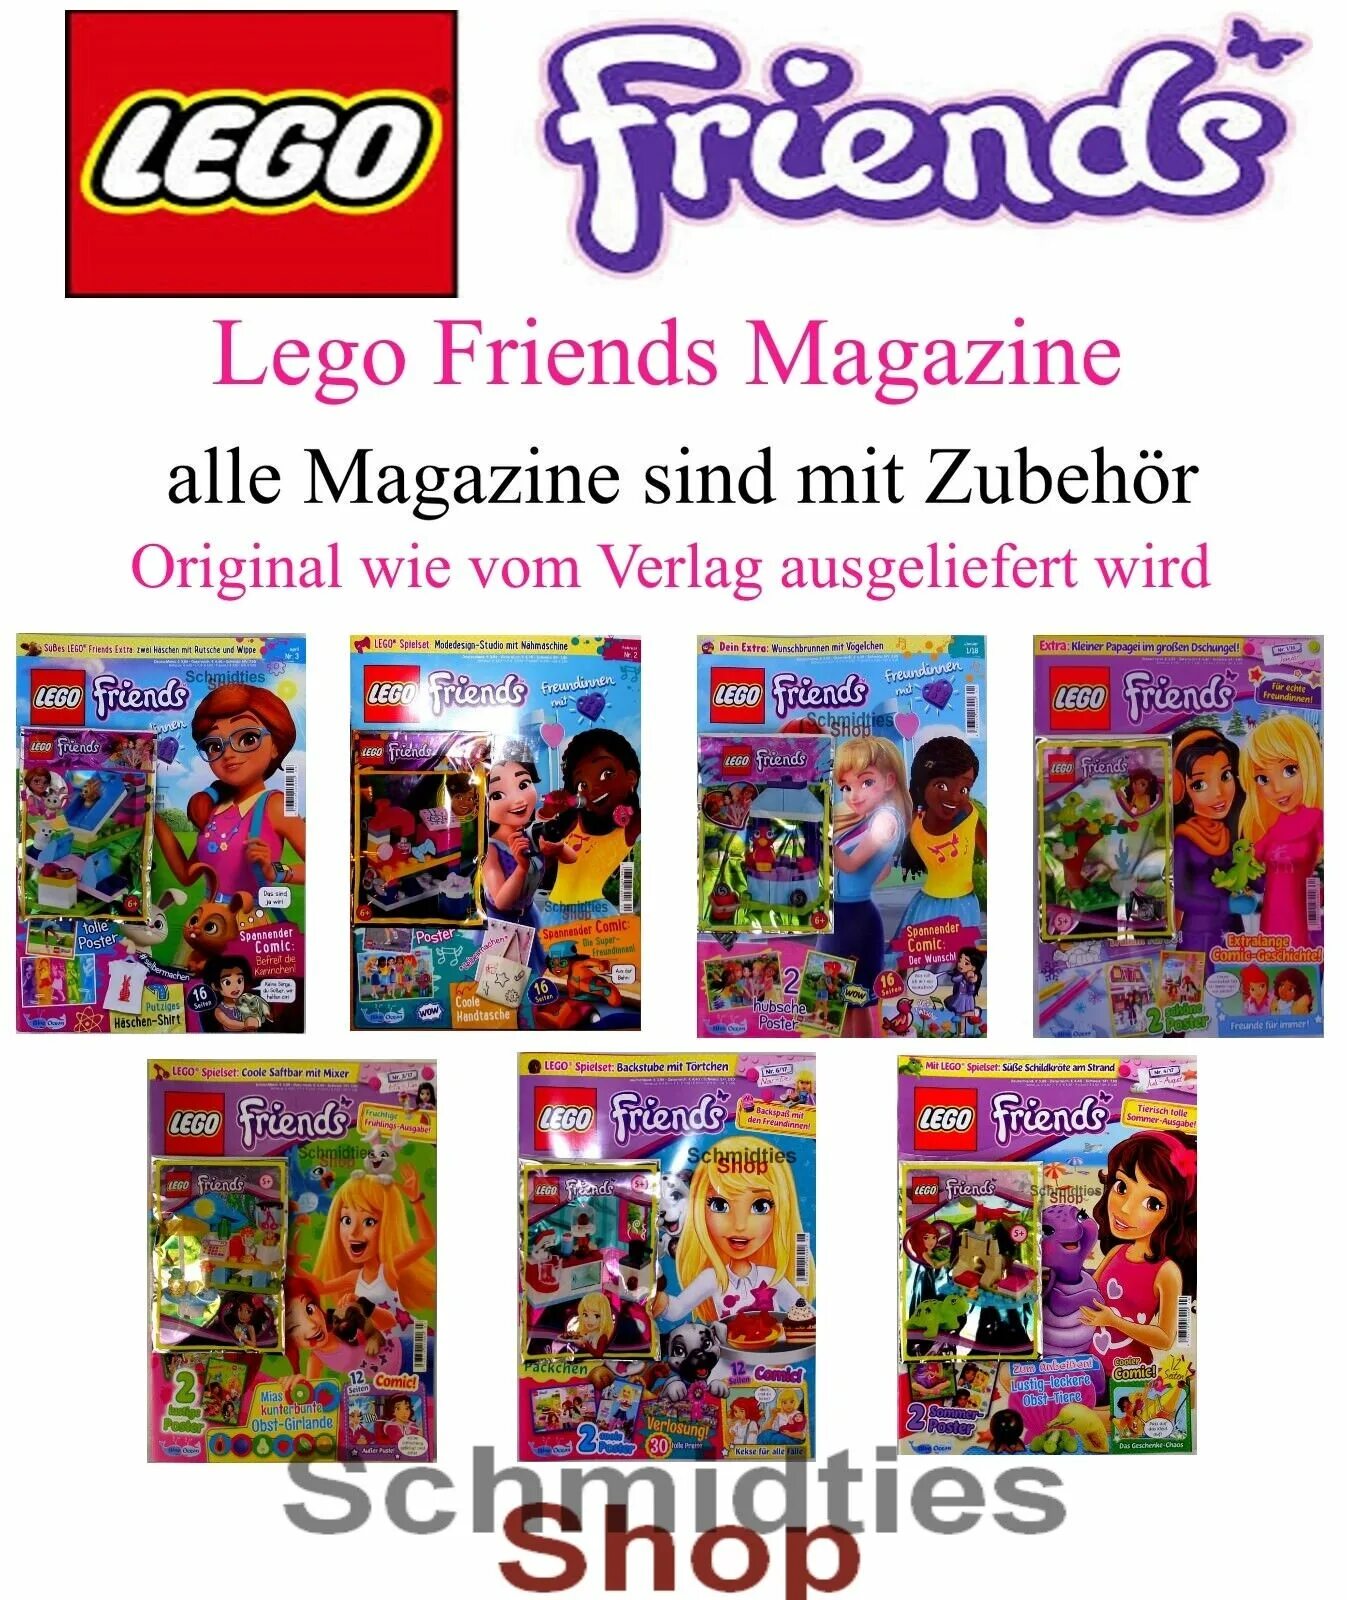 Friends magazine